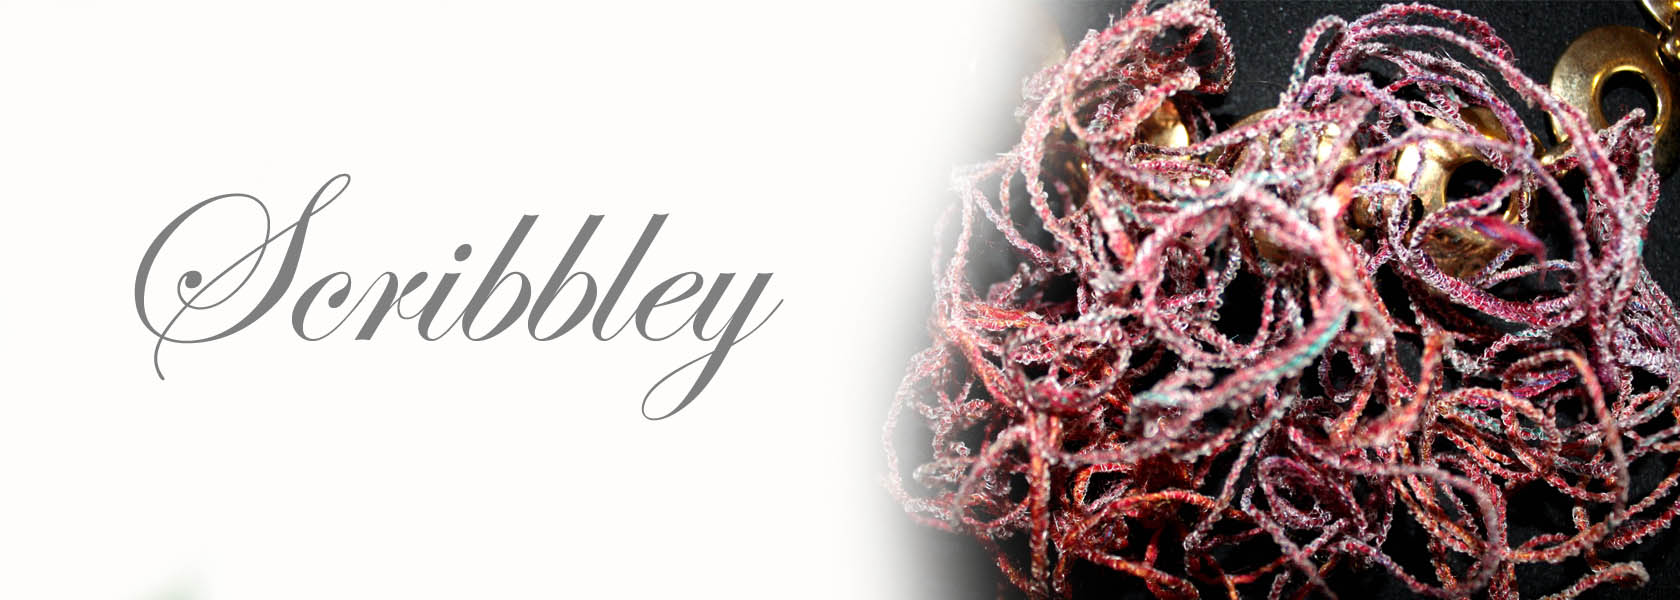 Scribbley - Saraden Designs